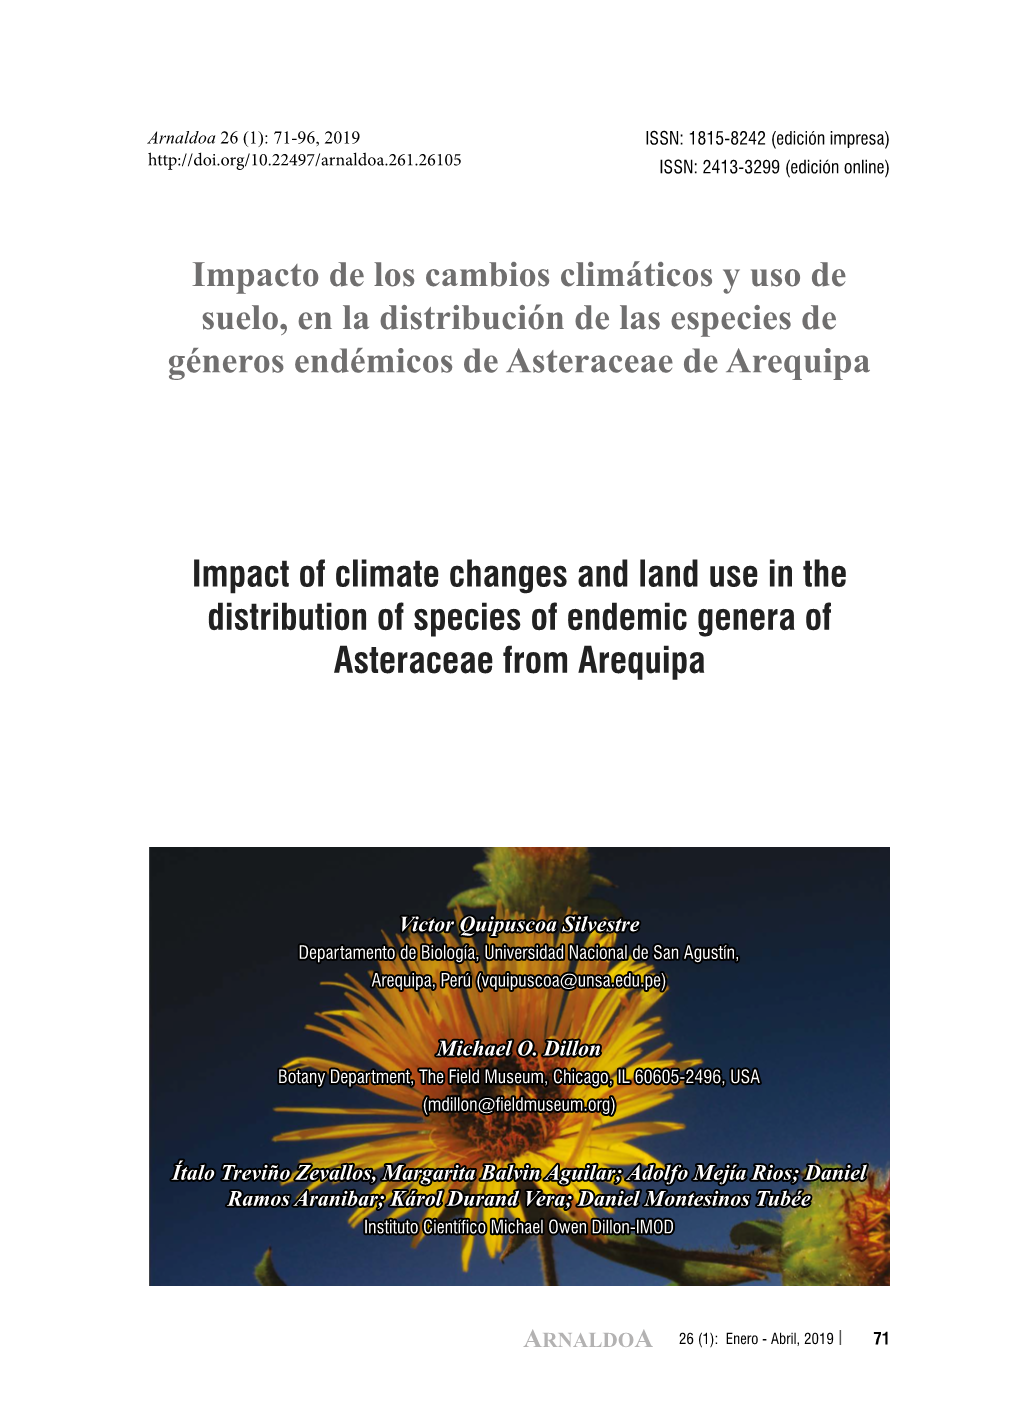 Impacto De Los Cambios Climáticos Y Uso De Suelo, En La Distribución De Las Especies De Géneros Endémicos De Asteraceae De Arequipa